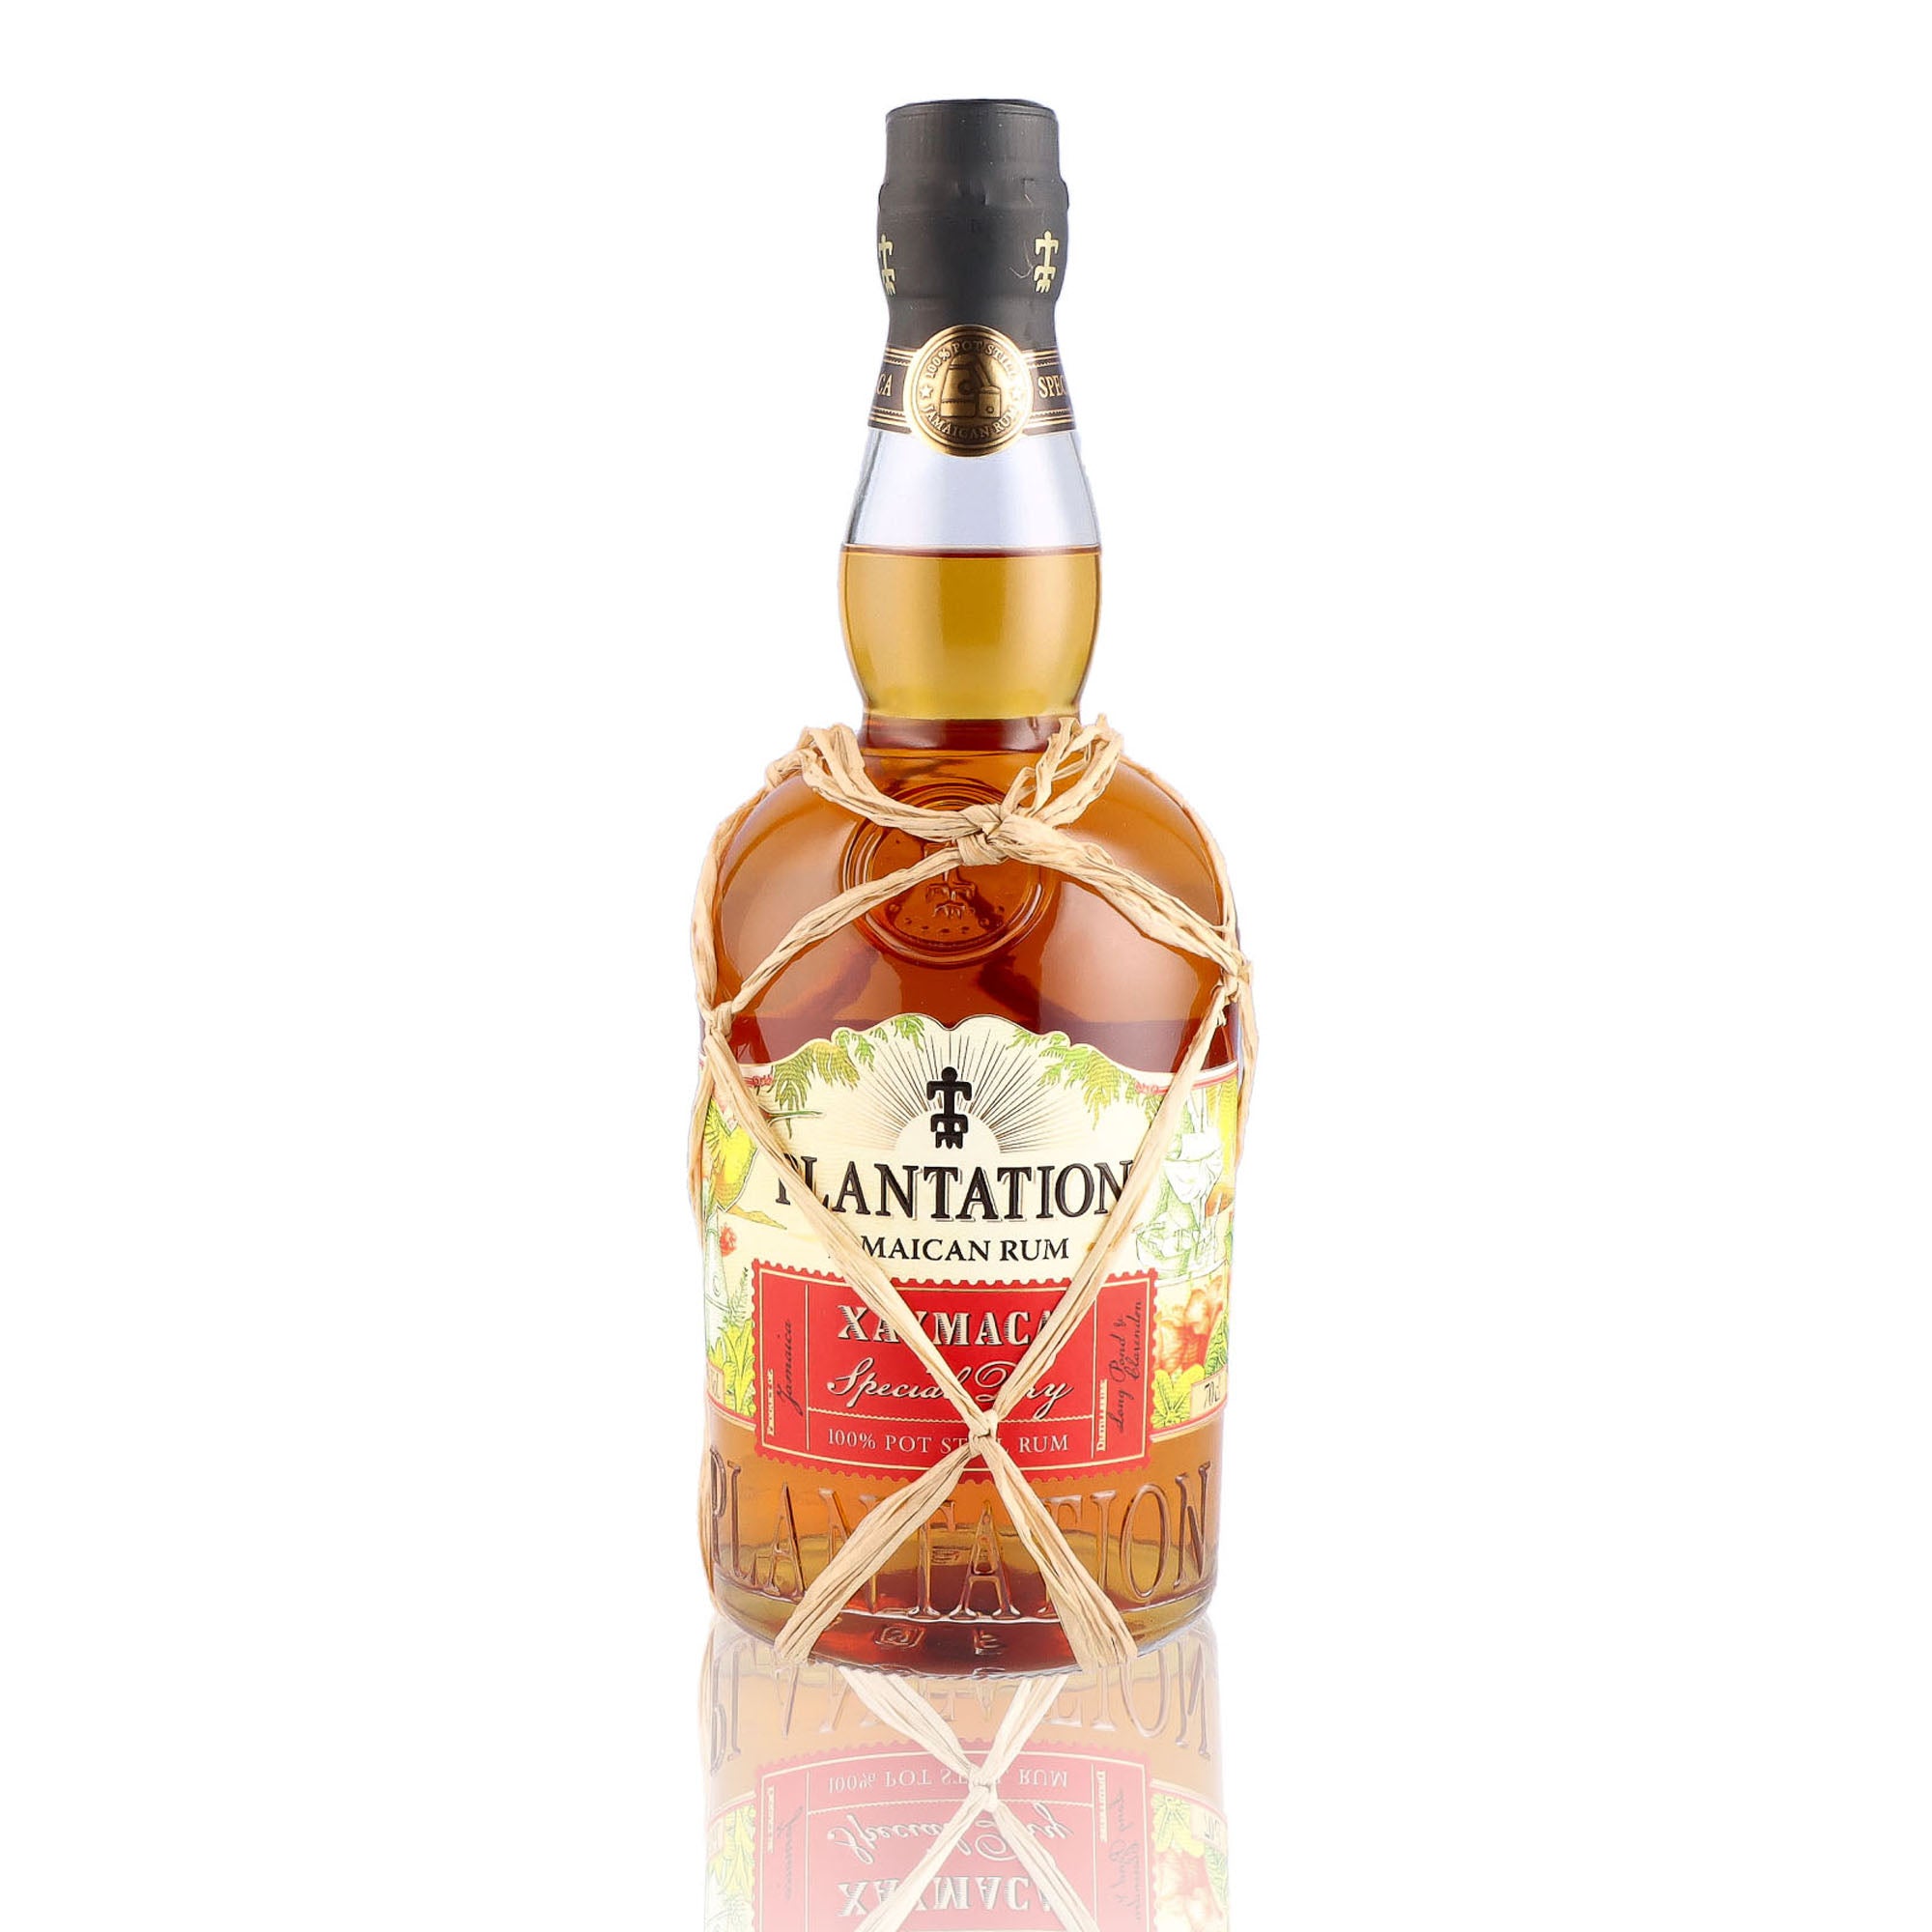 Une bouteille de rhum vieux, de la marque Plantation Rum, nommée Xaymaca Special dry.